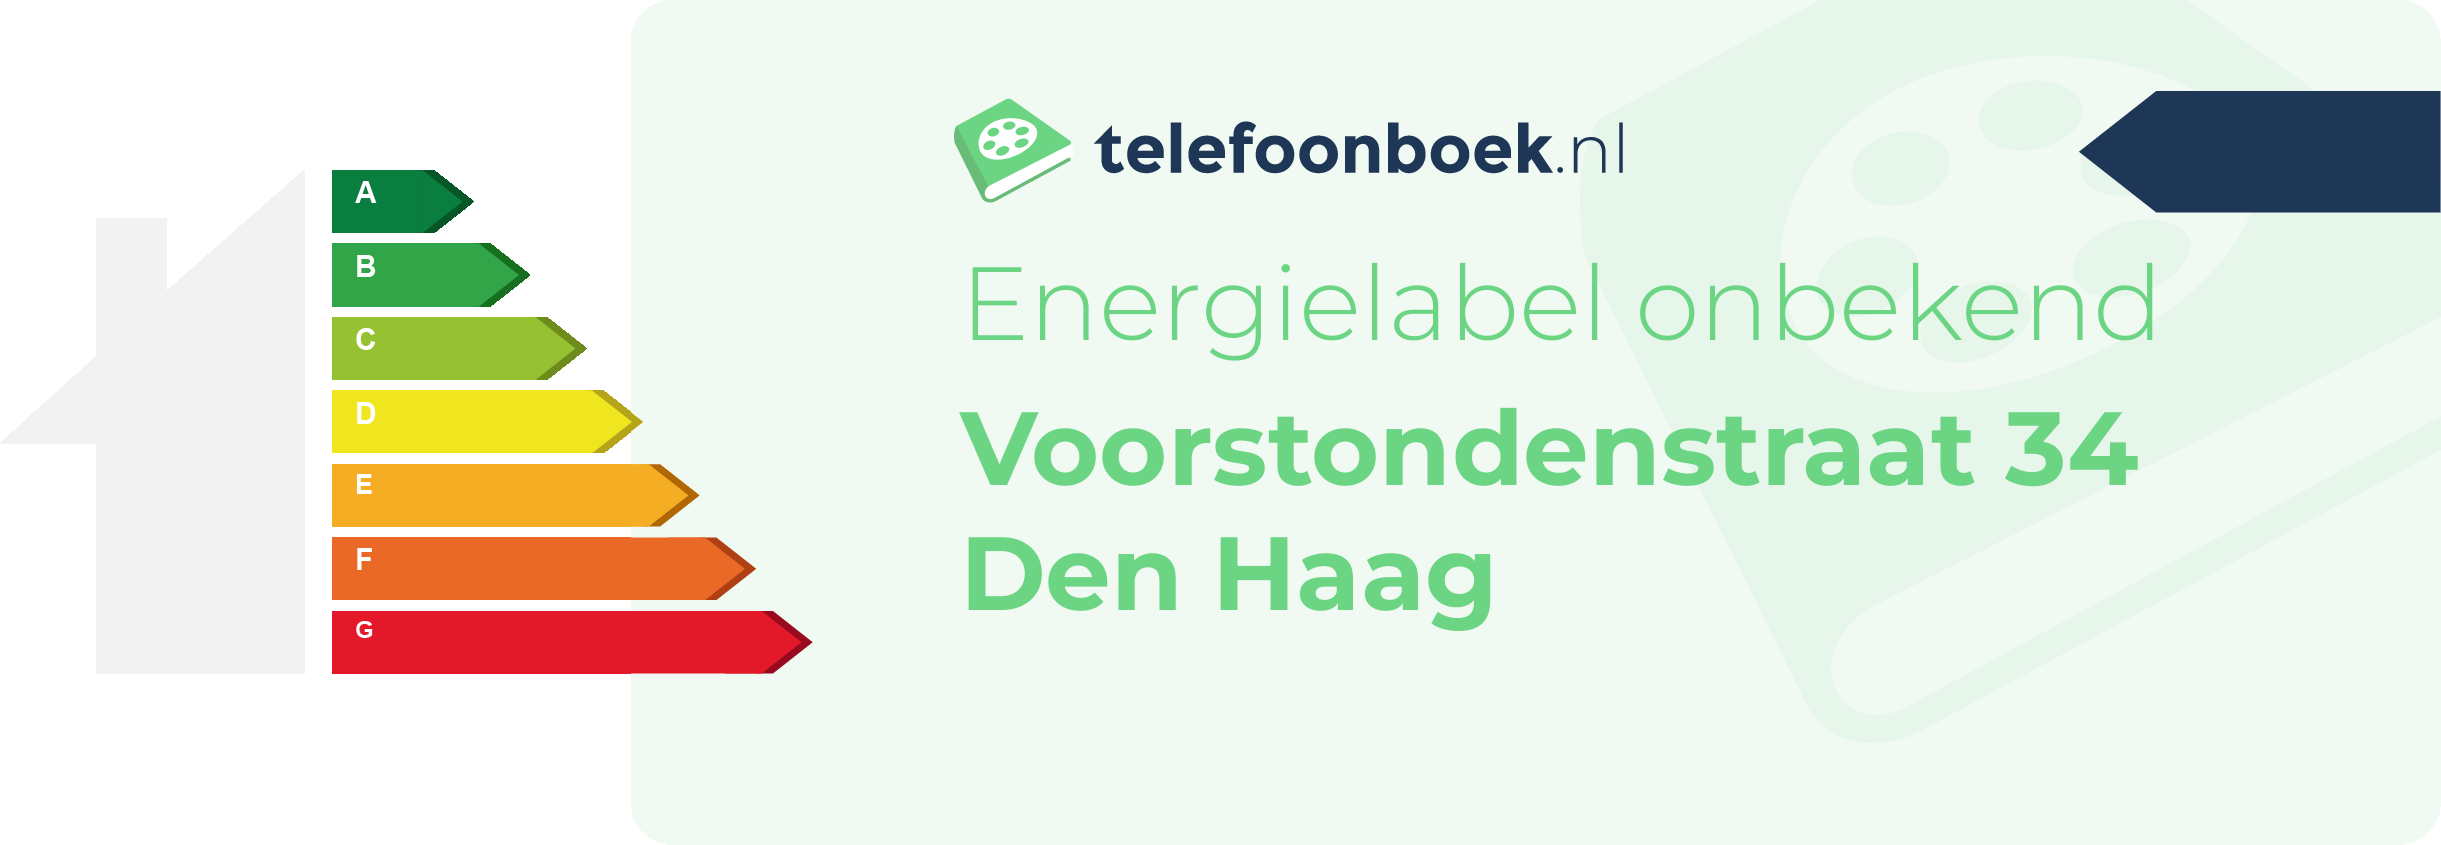 Energielabel Voorstondenstraat 34 Den Haag